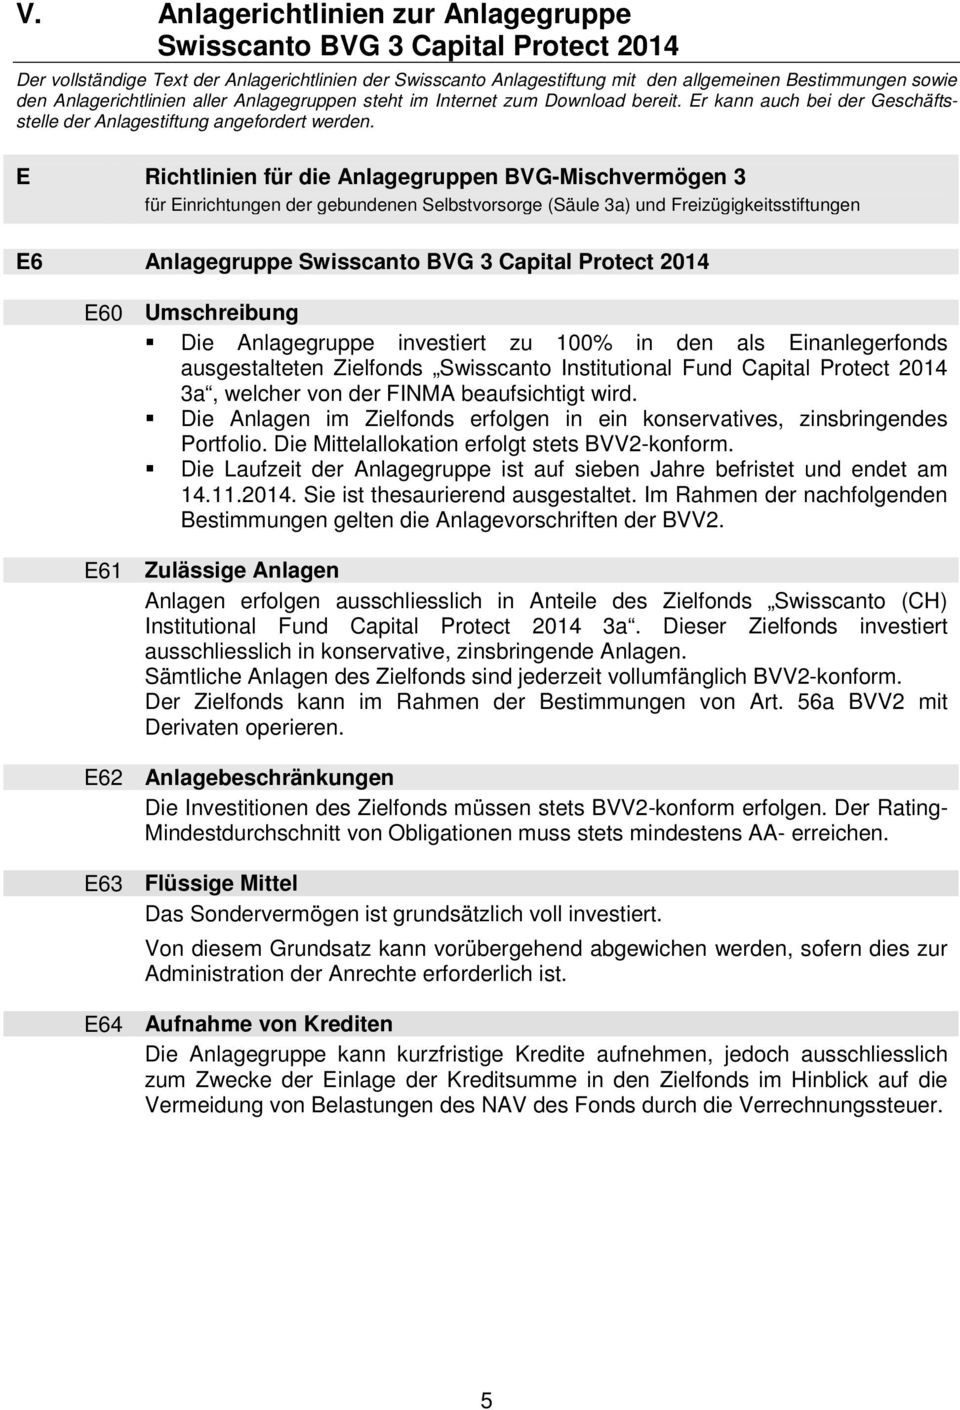 E Richtlinien für die Anlagegruppen BVG-Mischvermögen 3 für Einrichtungen der gebundenen Selbstvorsorge (Säule 3a) und Freizügigkeitsstiftungen E6 Anlagegruppe Swisscanto BVG 3 Capital Protect 2014